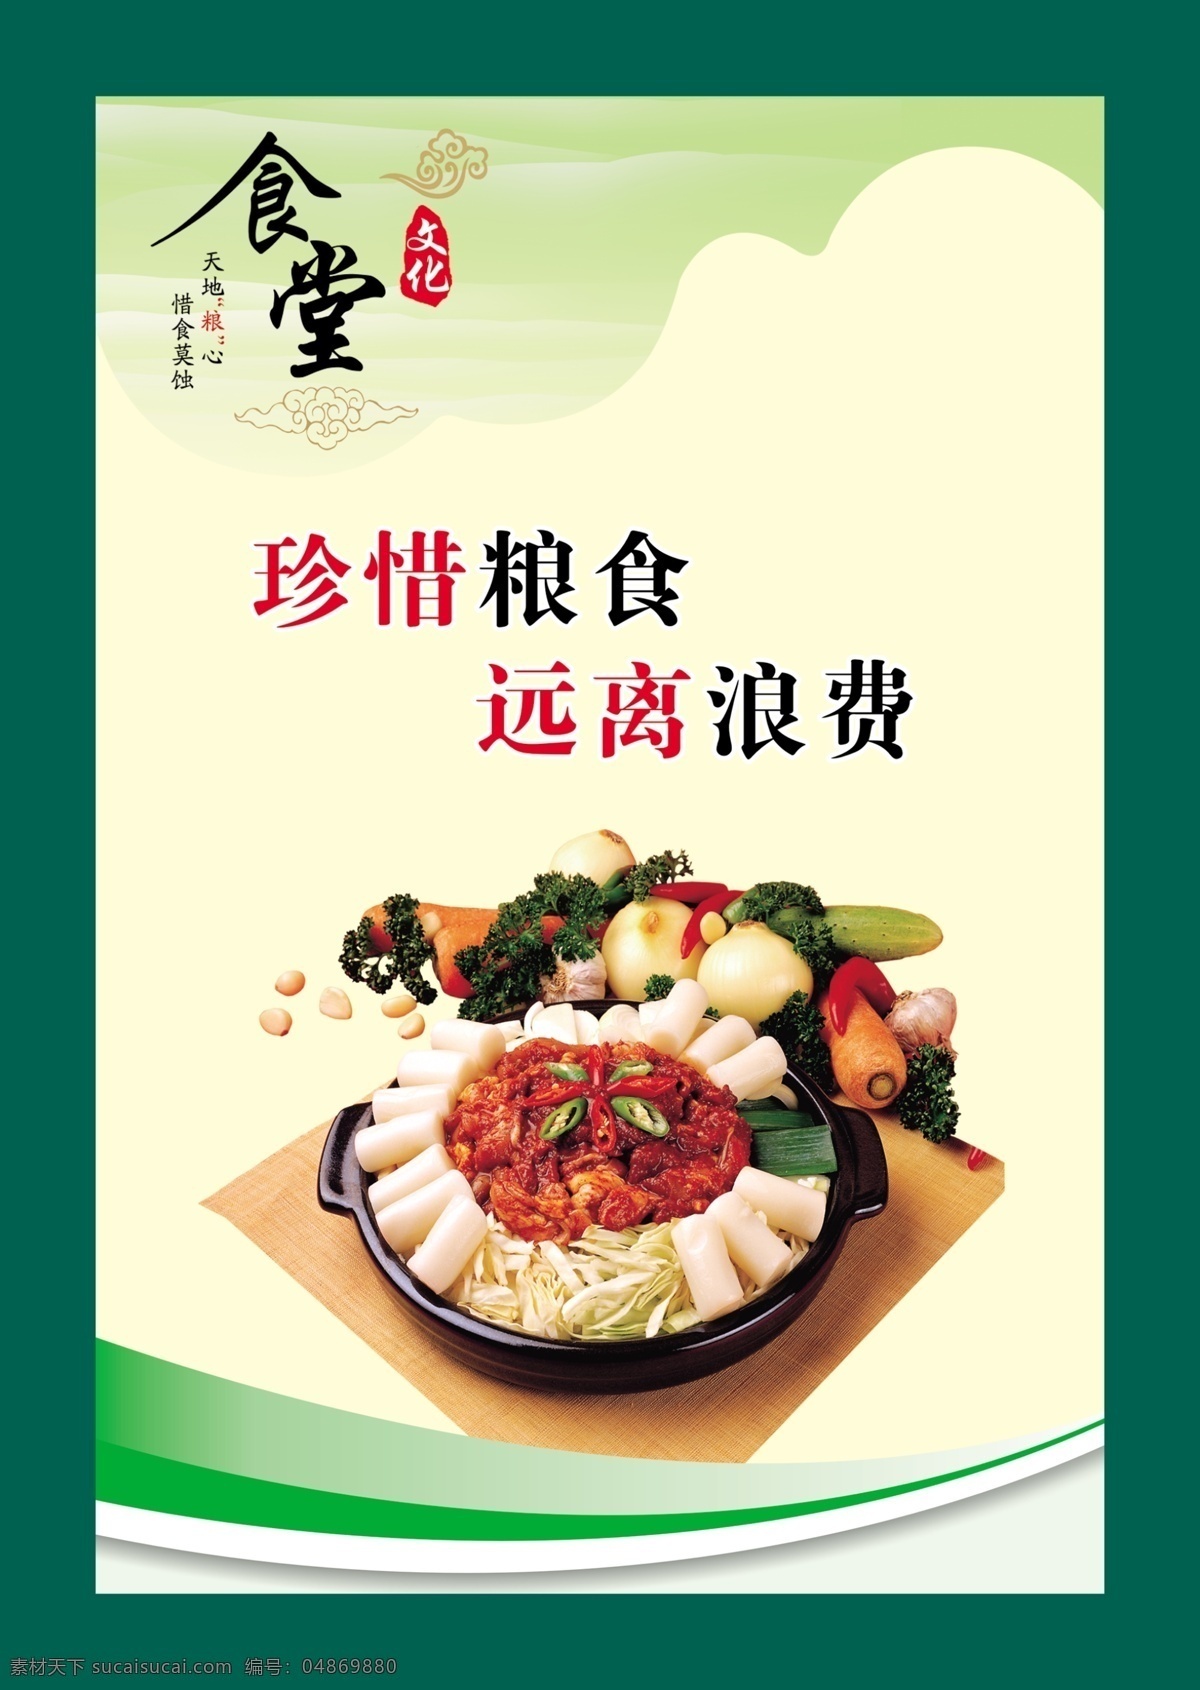 食堂 挂图 提倡节约 远离浪费 弘扬 中国 传统 饮食文化 展板 企业文化展板